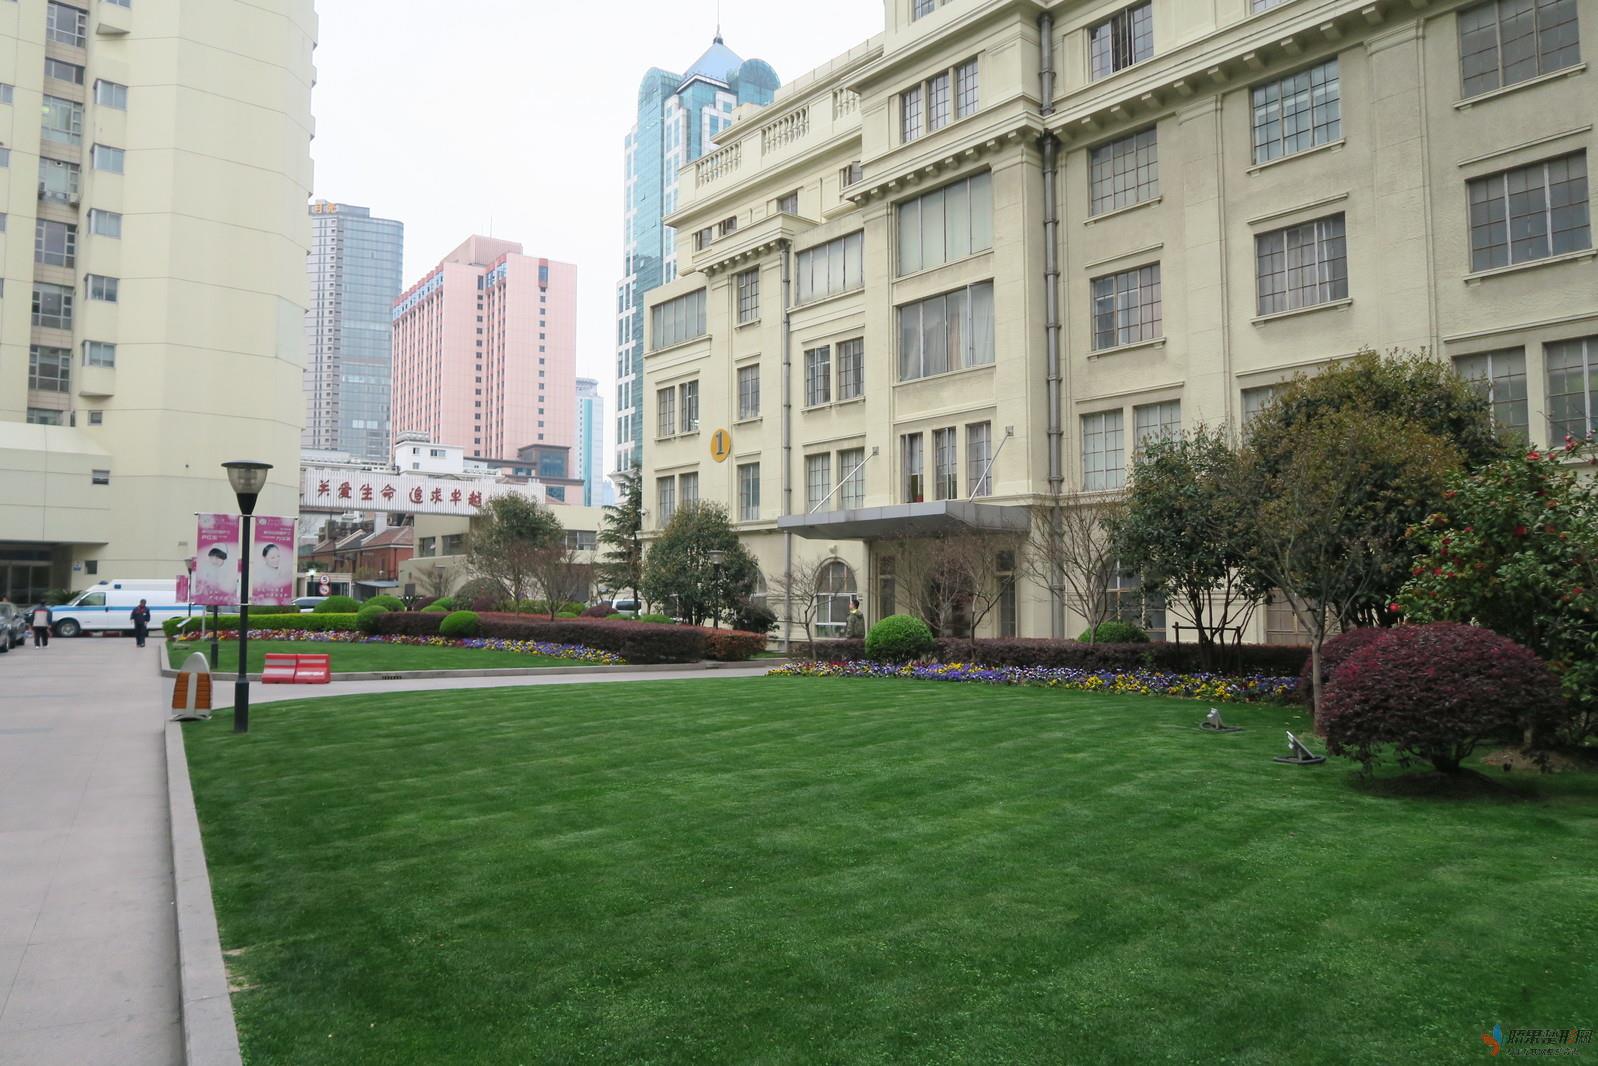 上海复旦大学附属华东医院